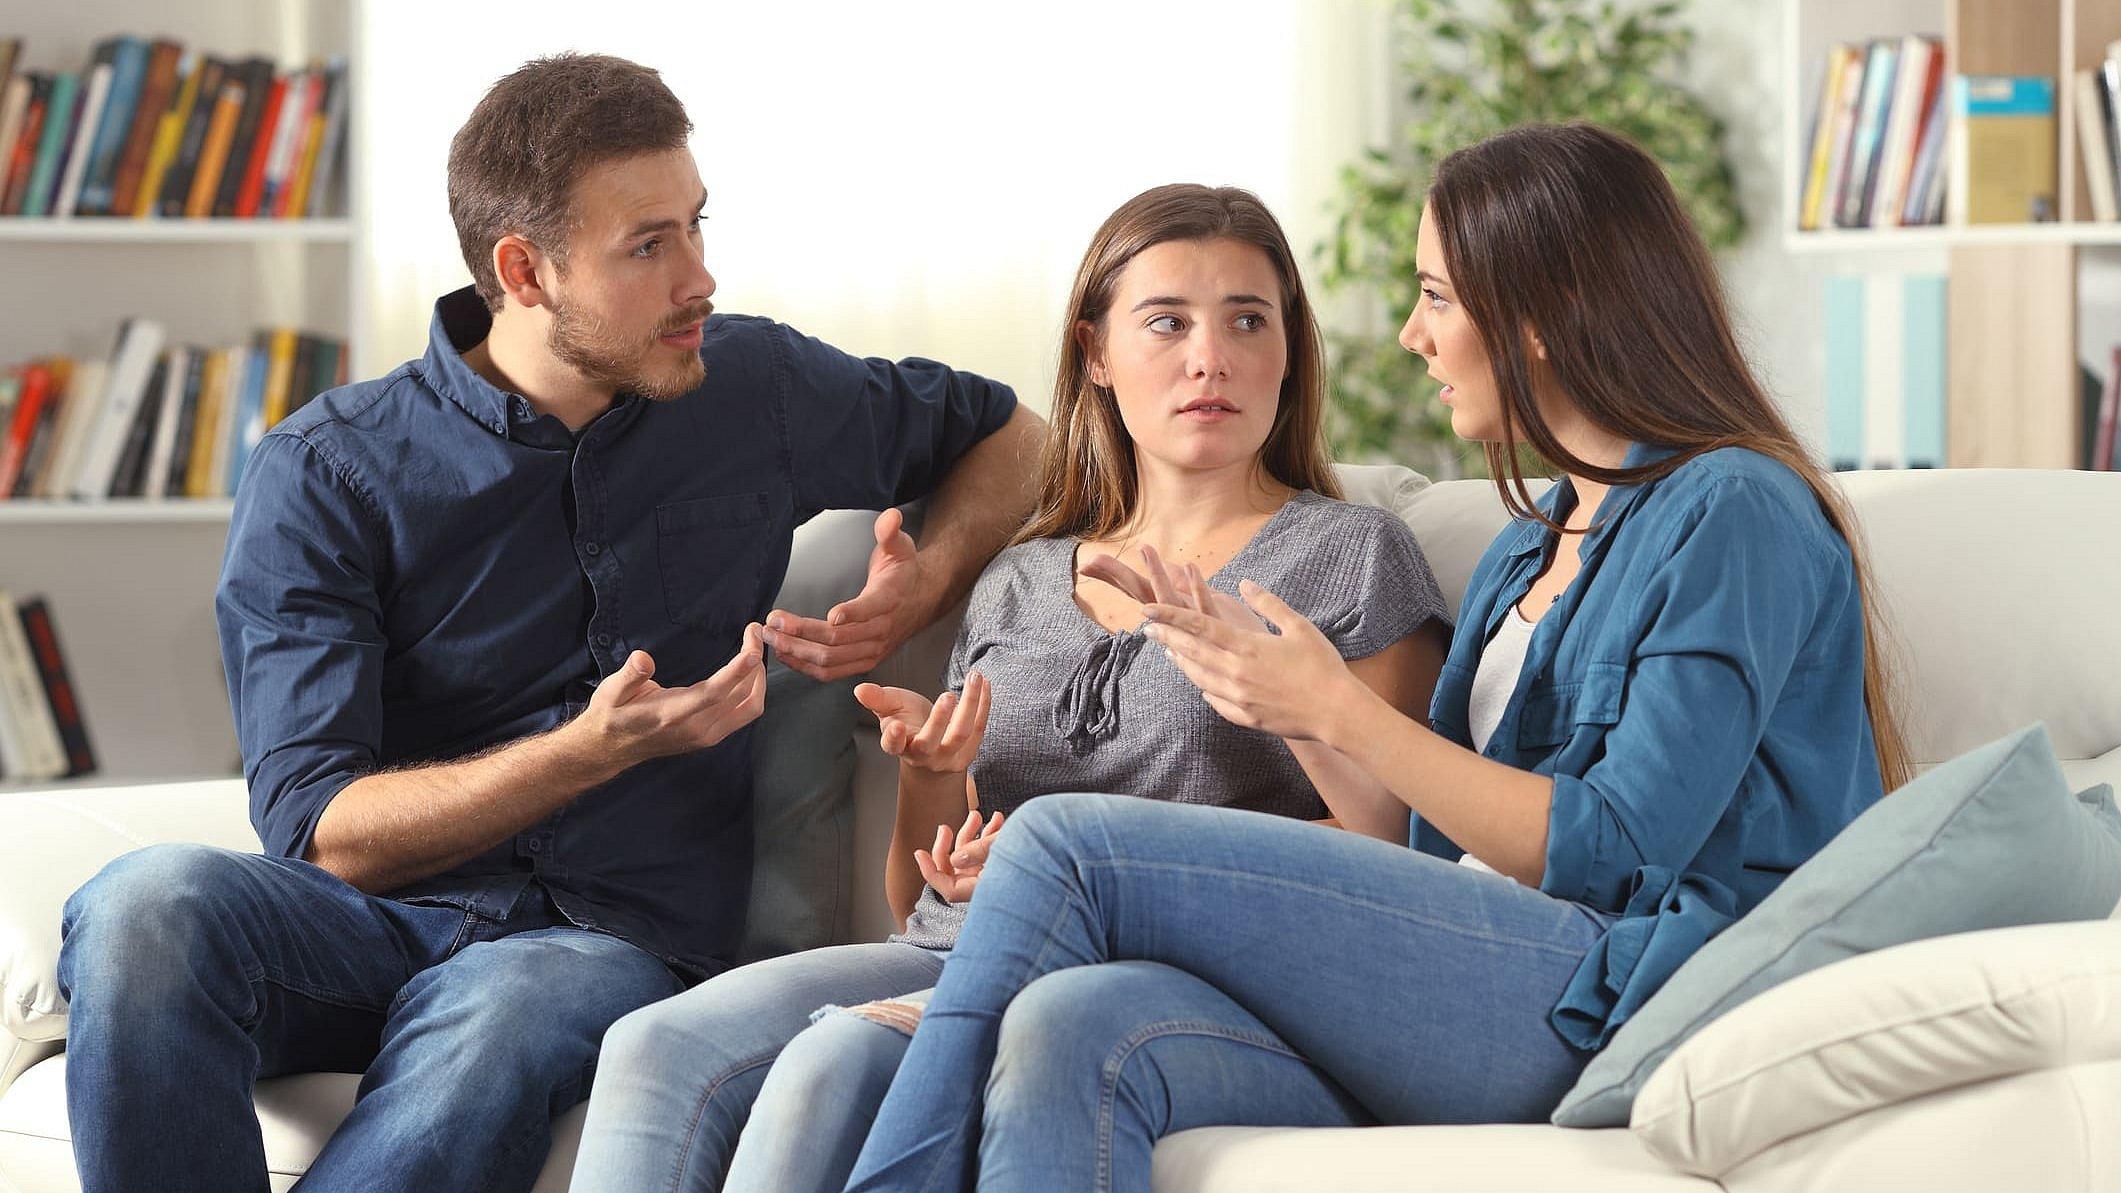 Ein junger Mann und zwei junge Frauen sitzen auf einer weißen Couch und diskutieren lebhaft miteinander, sie gestikulieren dabei.